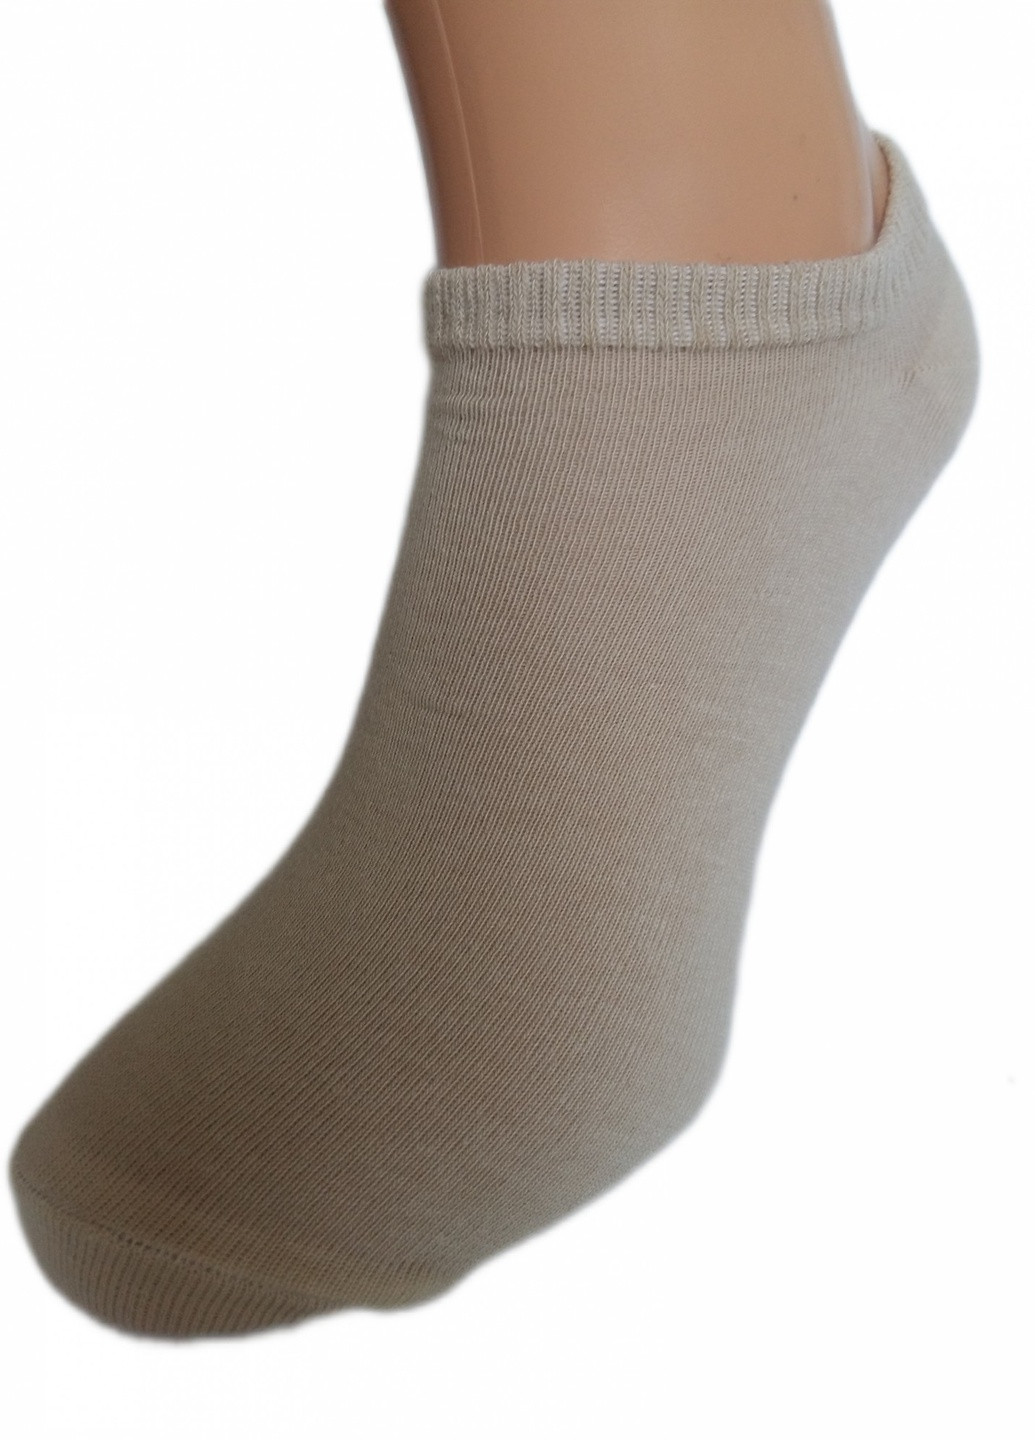 Шкарпетки чоловічі "Нова пара" 433У 39-41р. білі НОВА ПАРА укорочена висота (257108243)